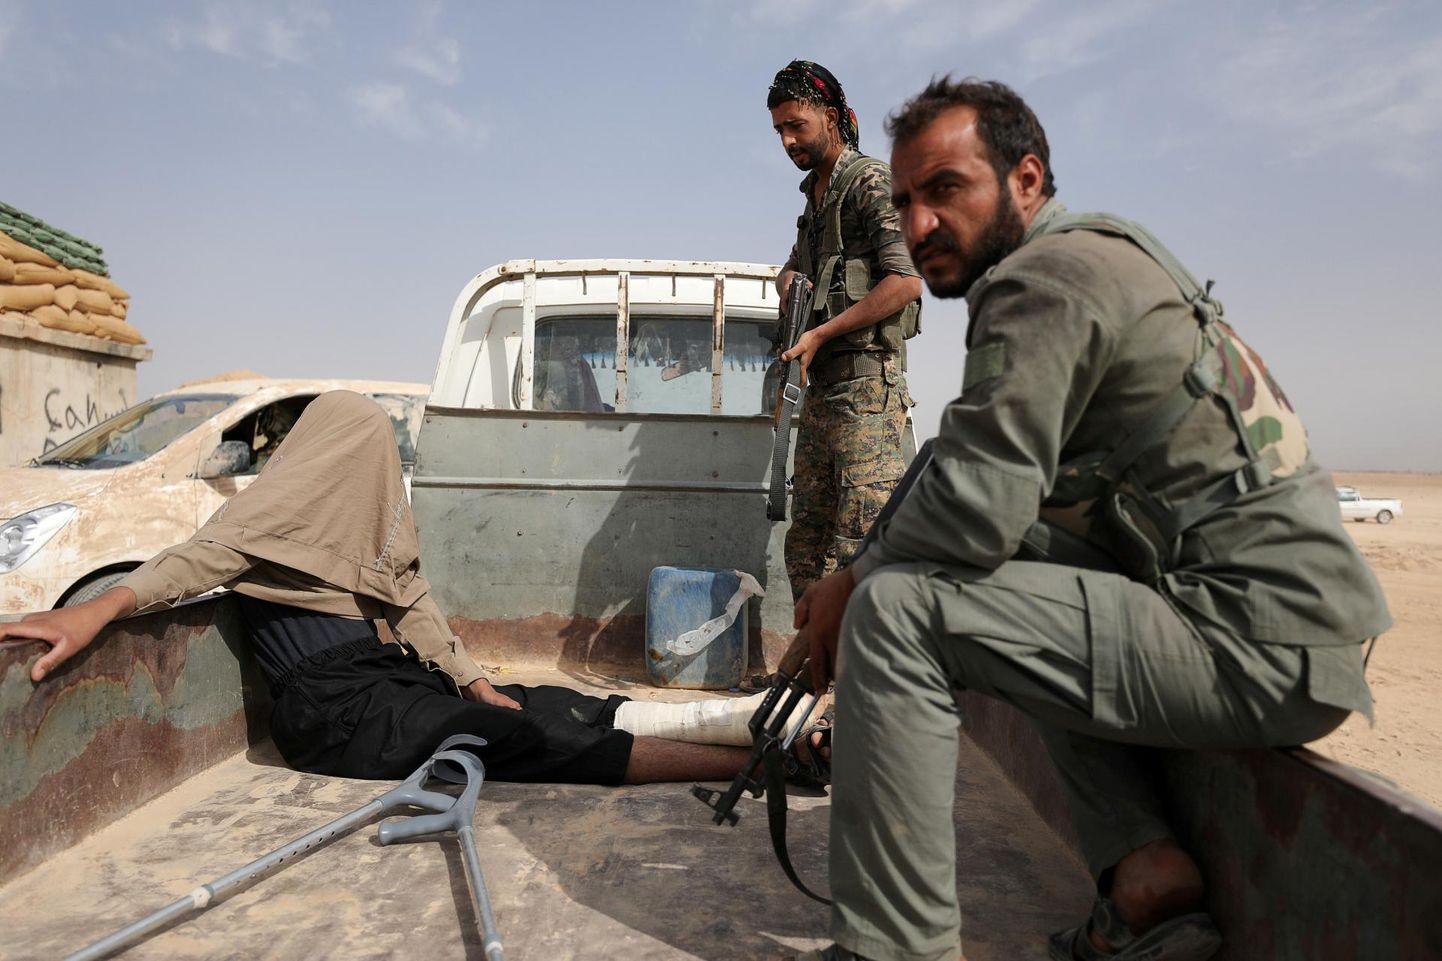 Süüria Demokraatlike Jõudude võitlejad vahi alla võetud mehega, keda kahtlustatakse ISISesse kuulumises. FOTO: Rodi Said/reuters/scanpix